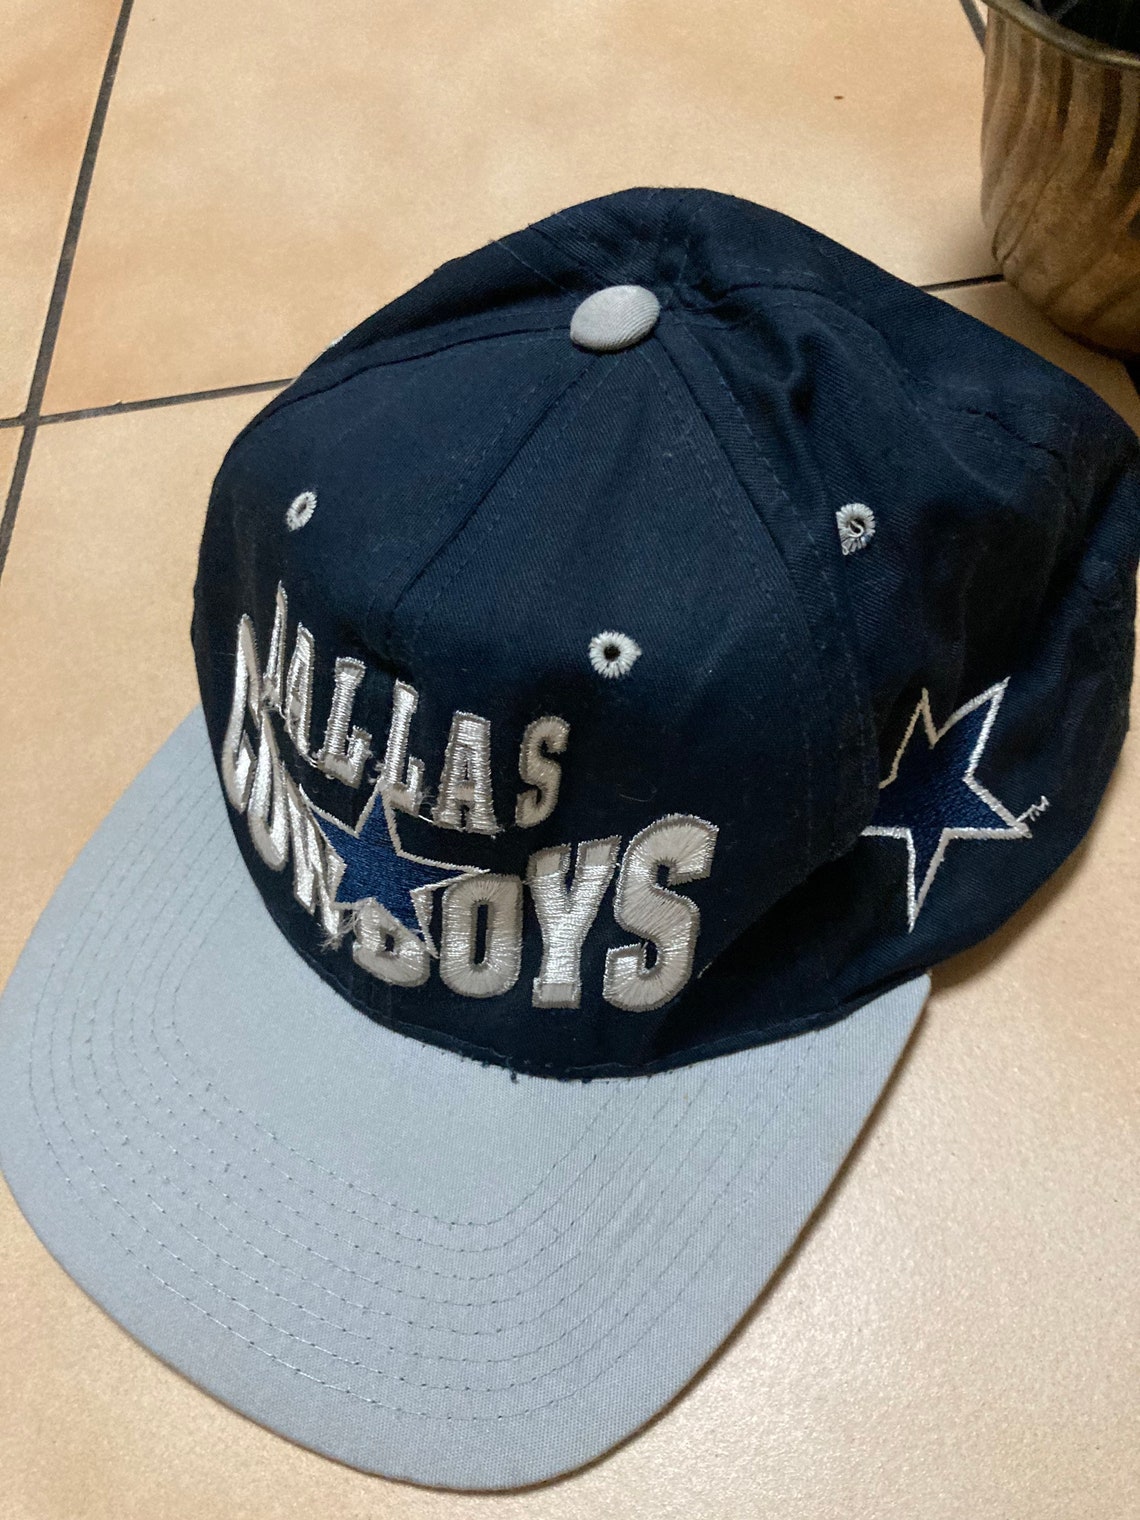 Vintage Dallas cowboys SnapBack hat 90s | Etsy